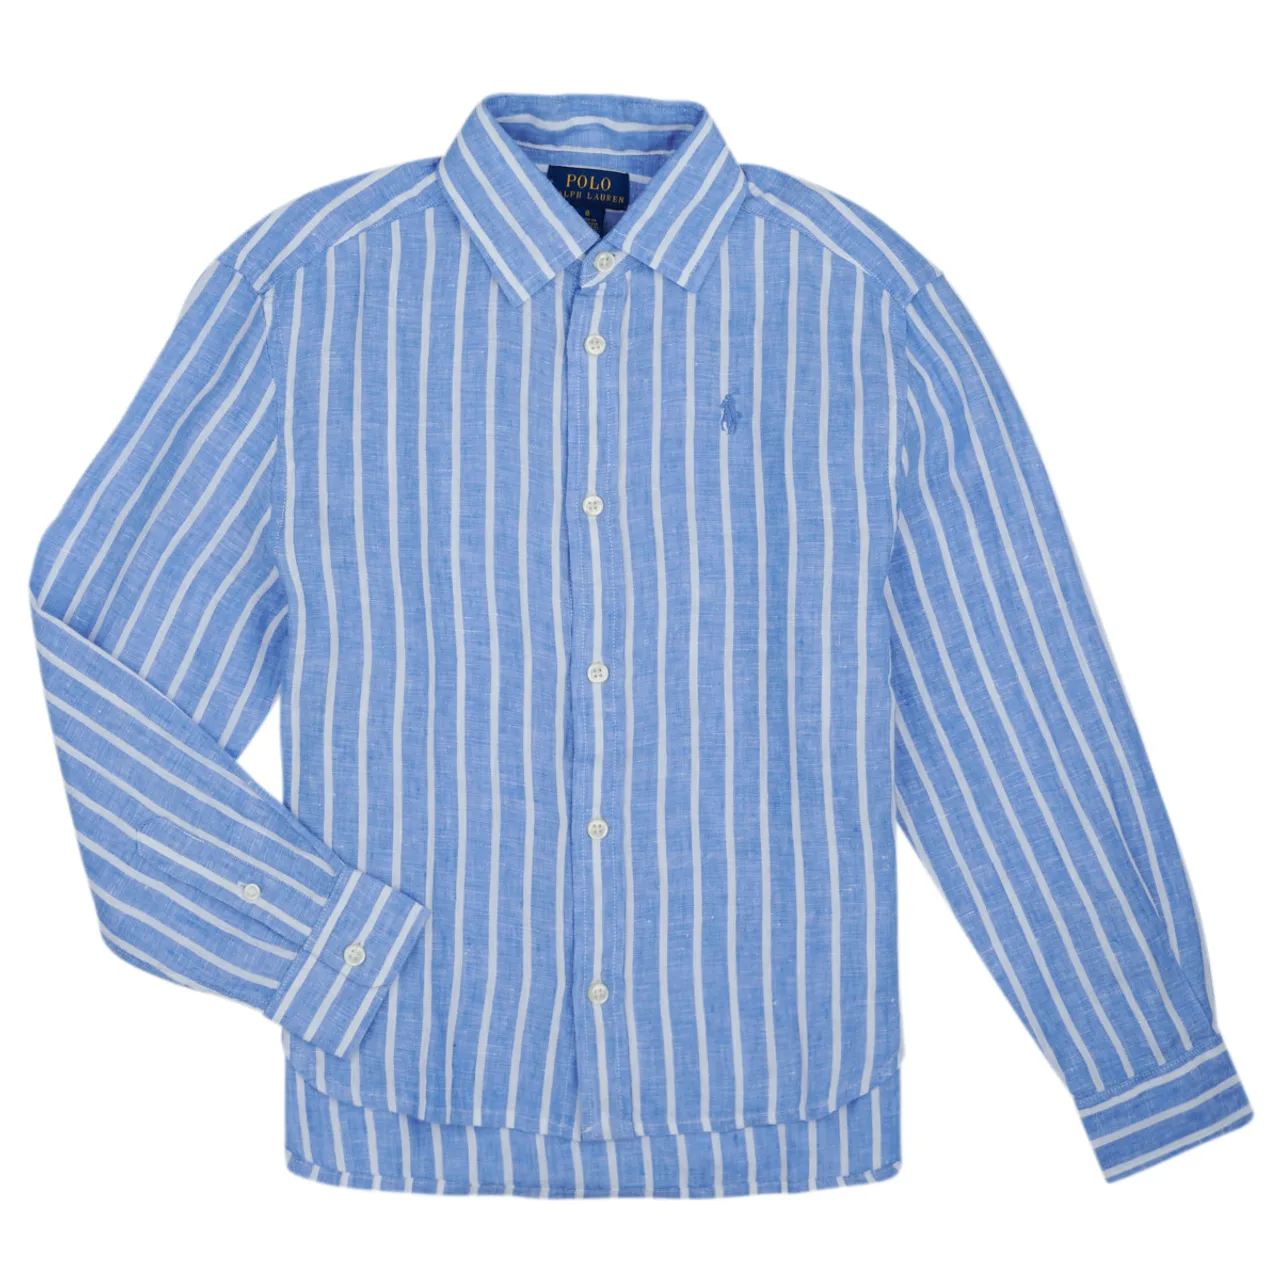 Polo Ralph Lauren  LISMORESHIRT-SHIRTS-BUTTON FRONT SHIRT  girls's Children's shirt in Multicolour